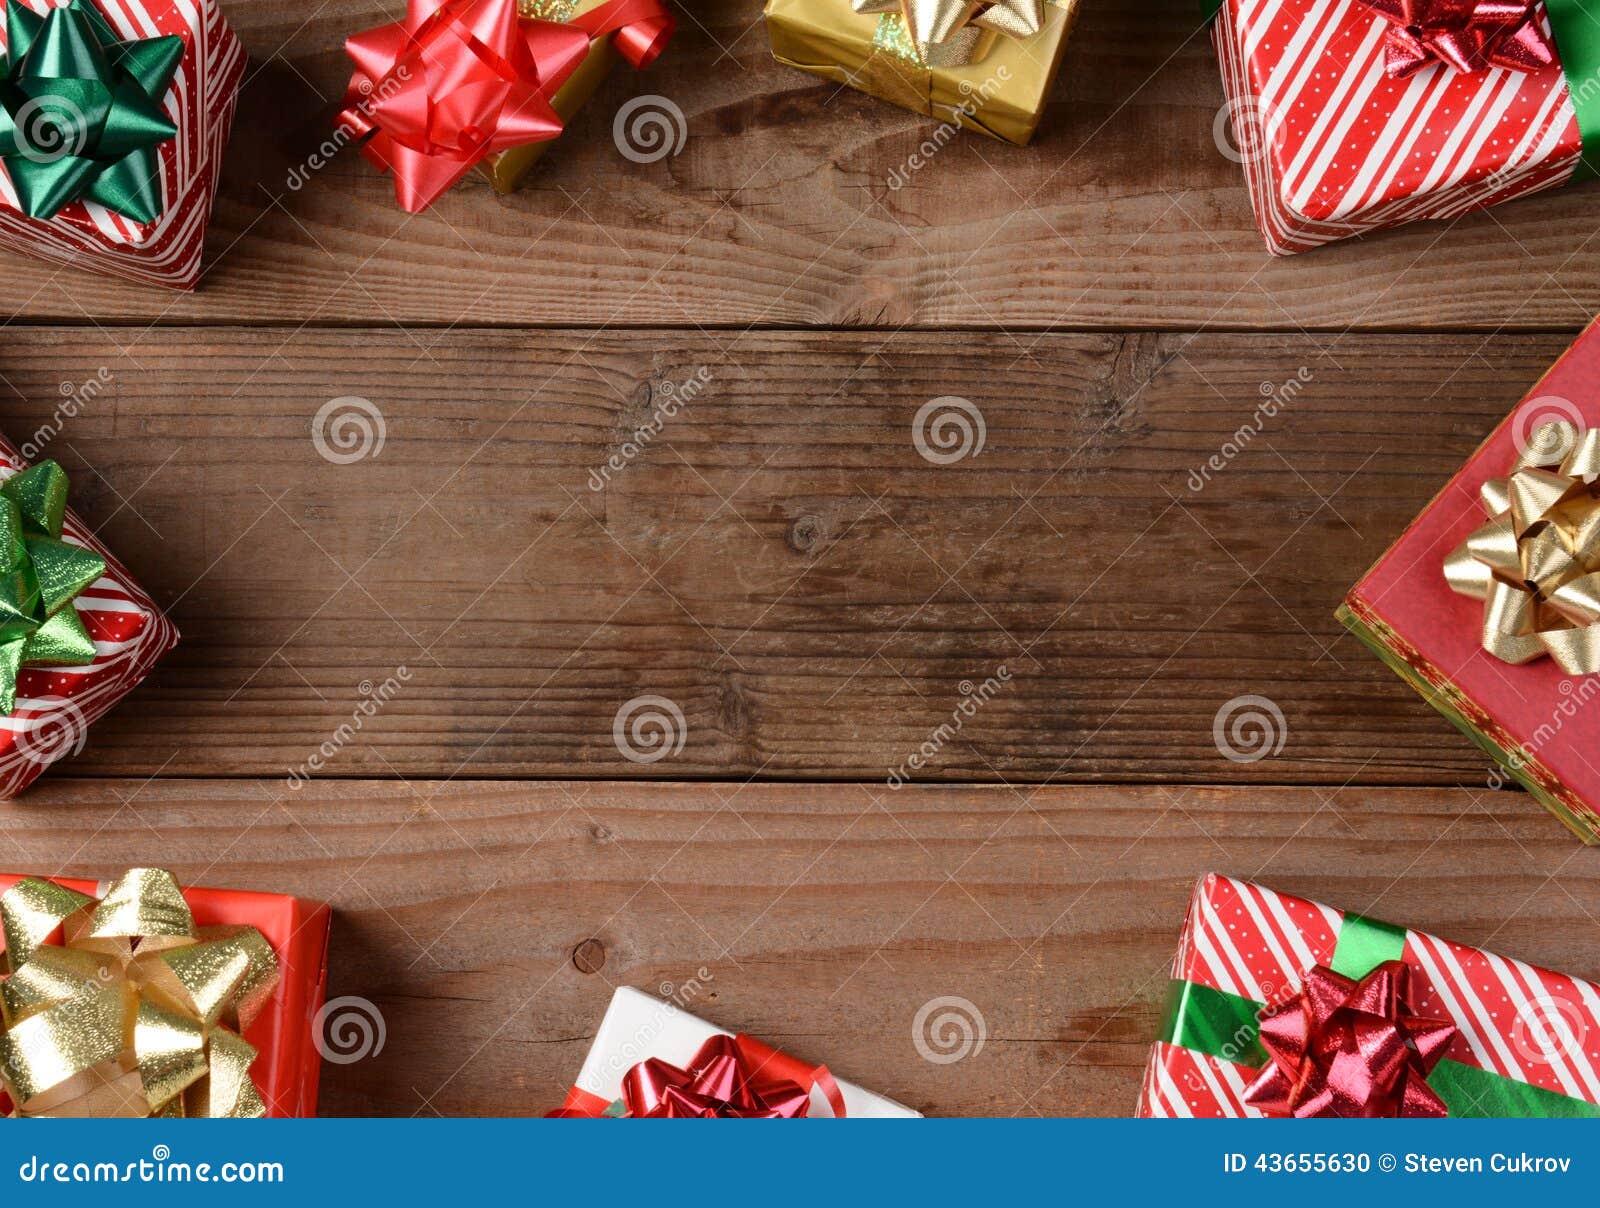 Regalos de Navidad de madera rústicos del piso. Una opinión de alto ángulo de un grupo de regalos de Navidad en un piso de madera rústico Los presentes se dispersan alrededor de los bordes del bastidor que sale de un centro vacío para su objeto o copian